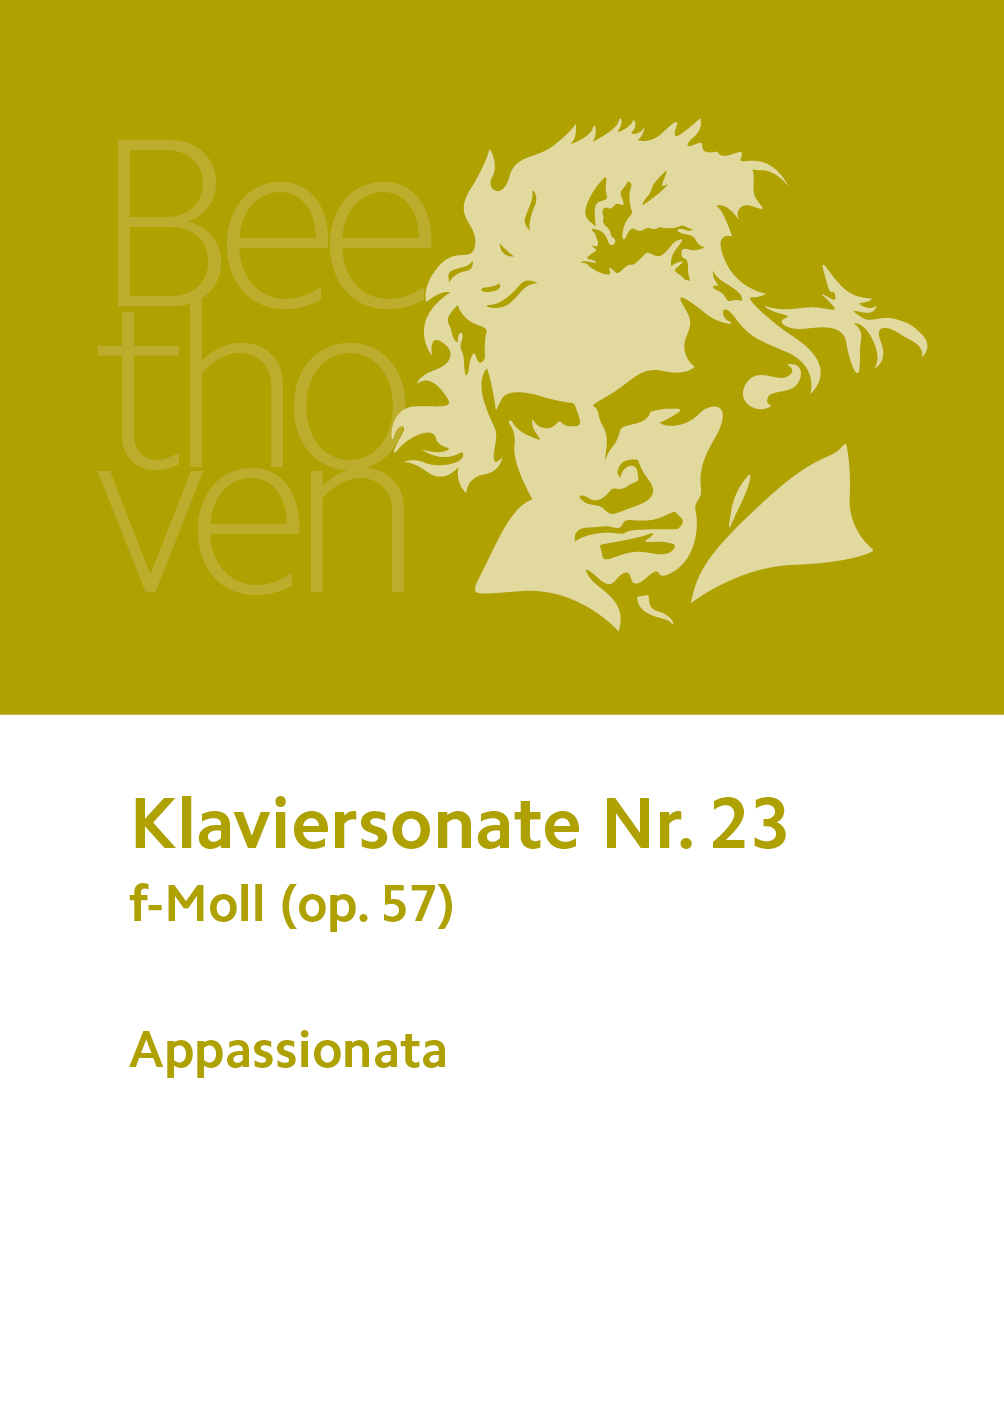 Ludwig van Beethoven, »Appassionata«